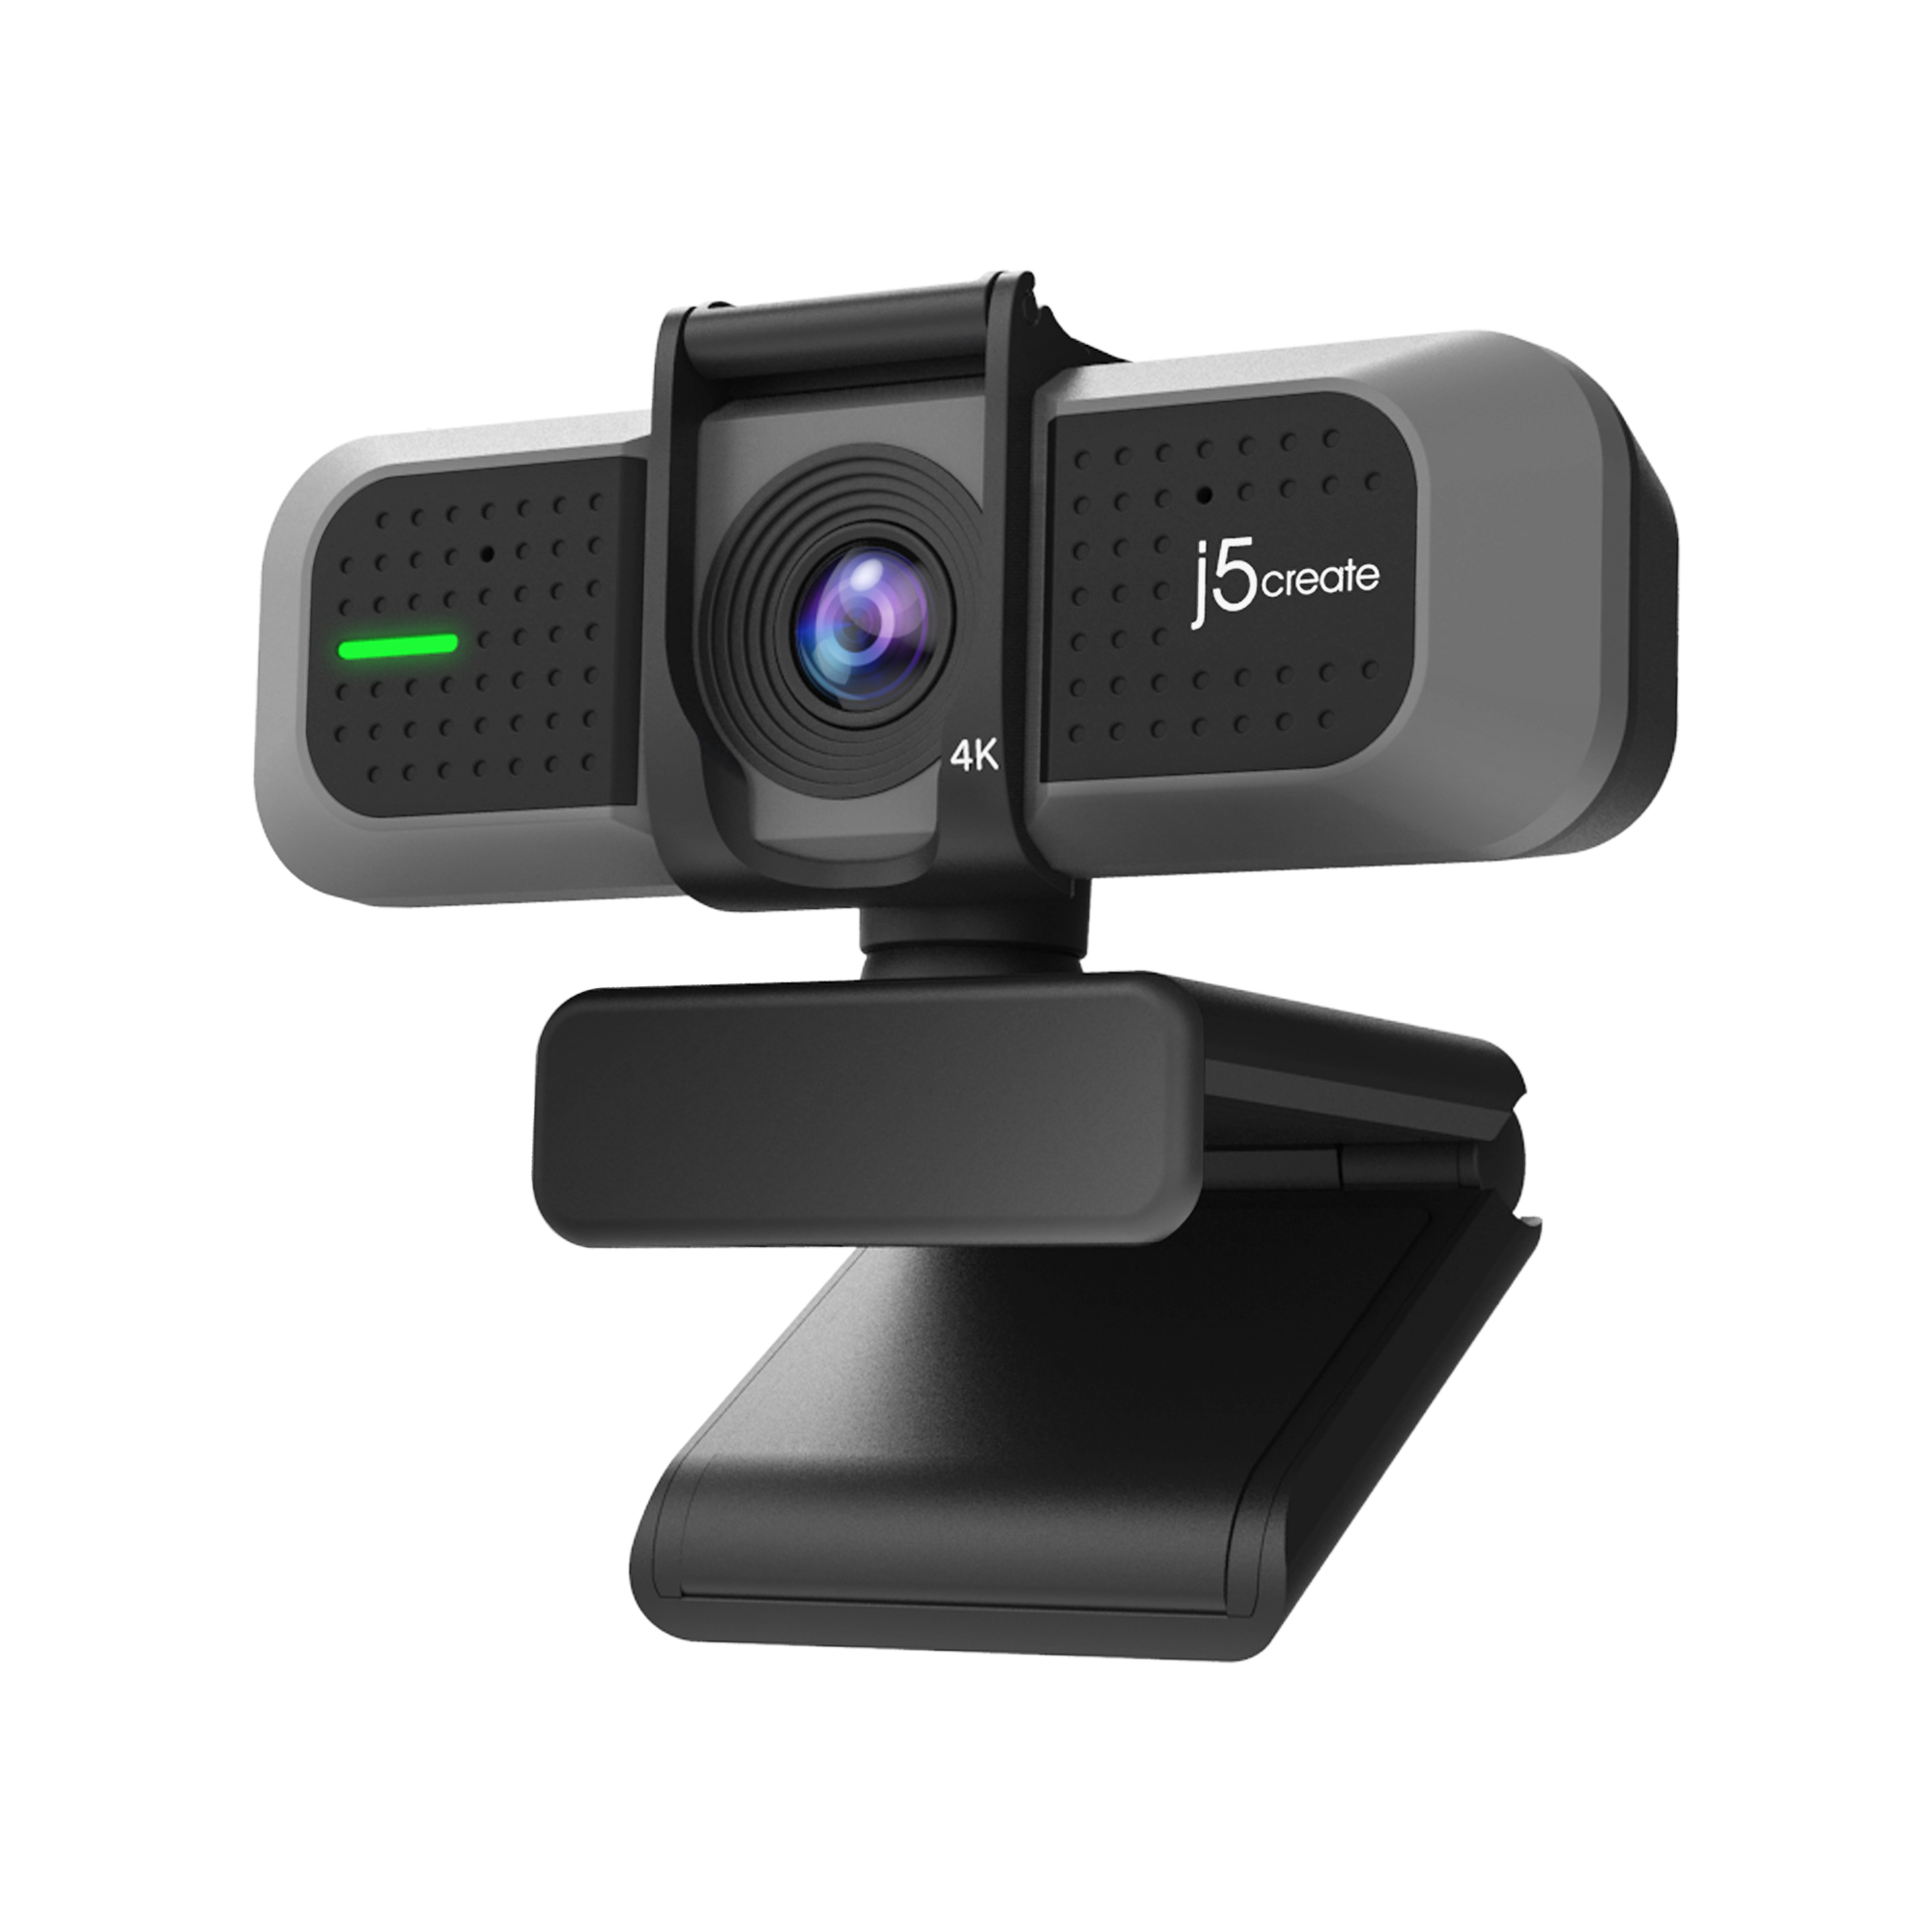 USB Ultra HD 4K Webcam JVU430-N J5CREATE